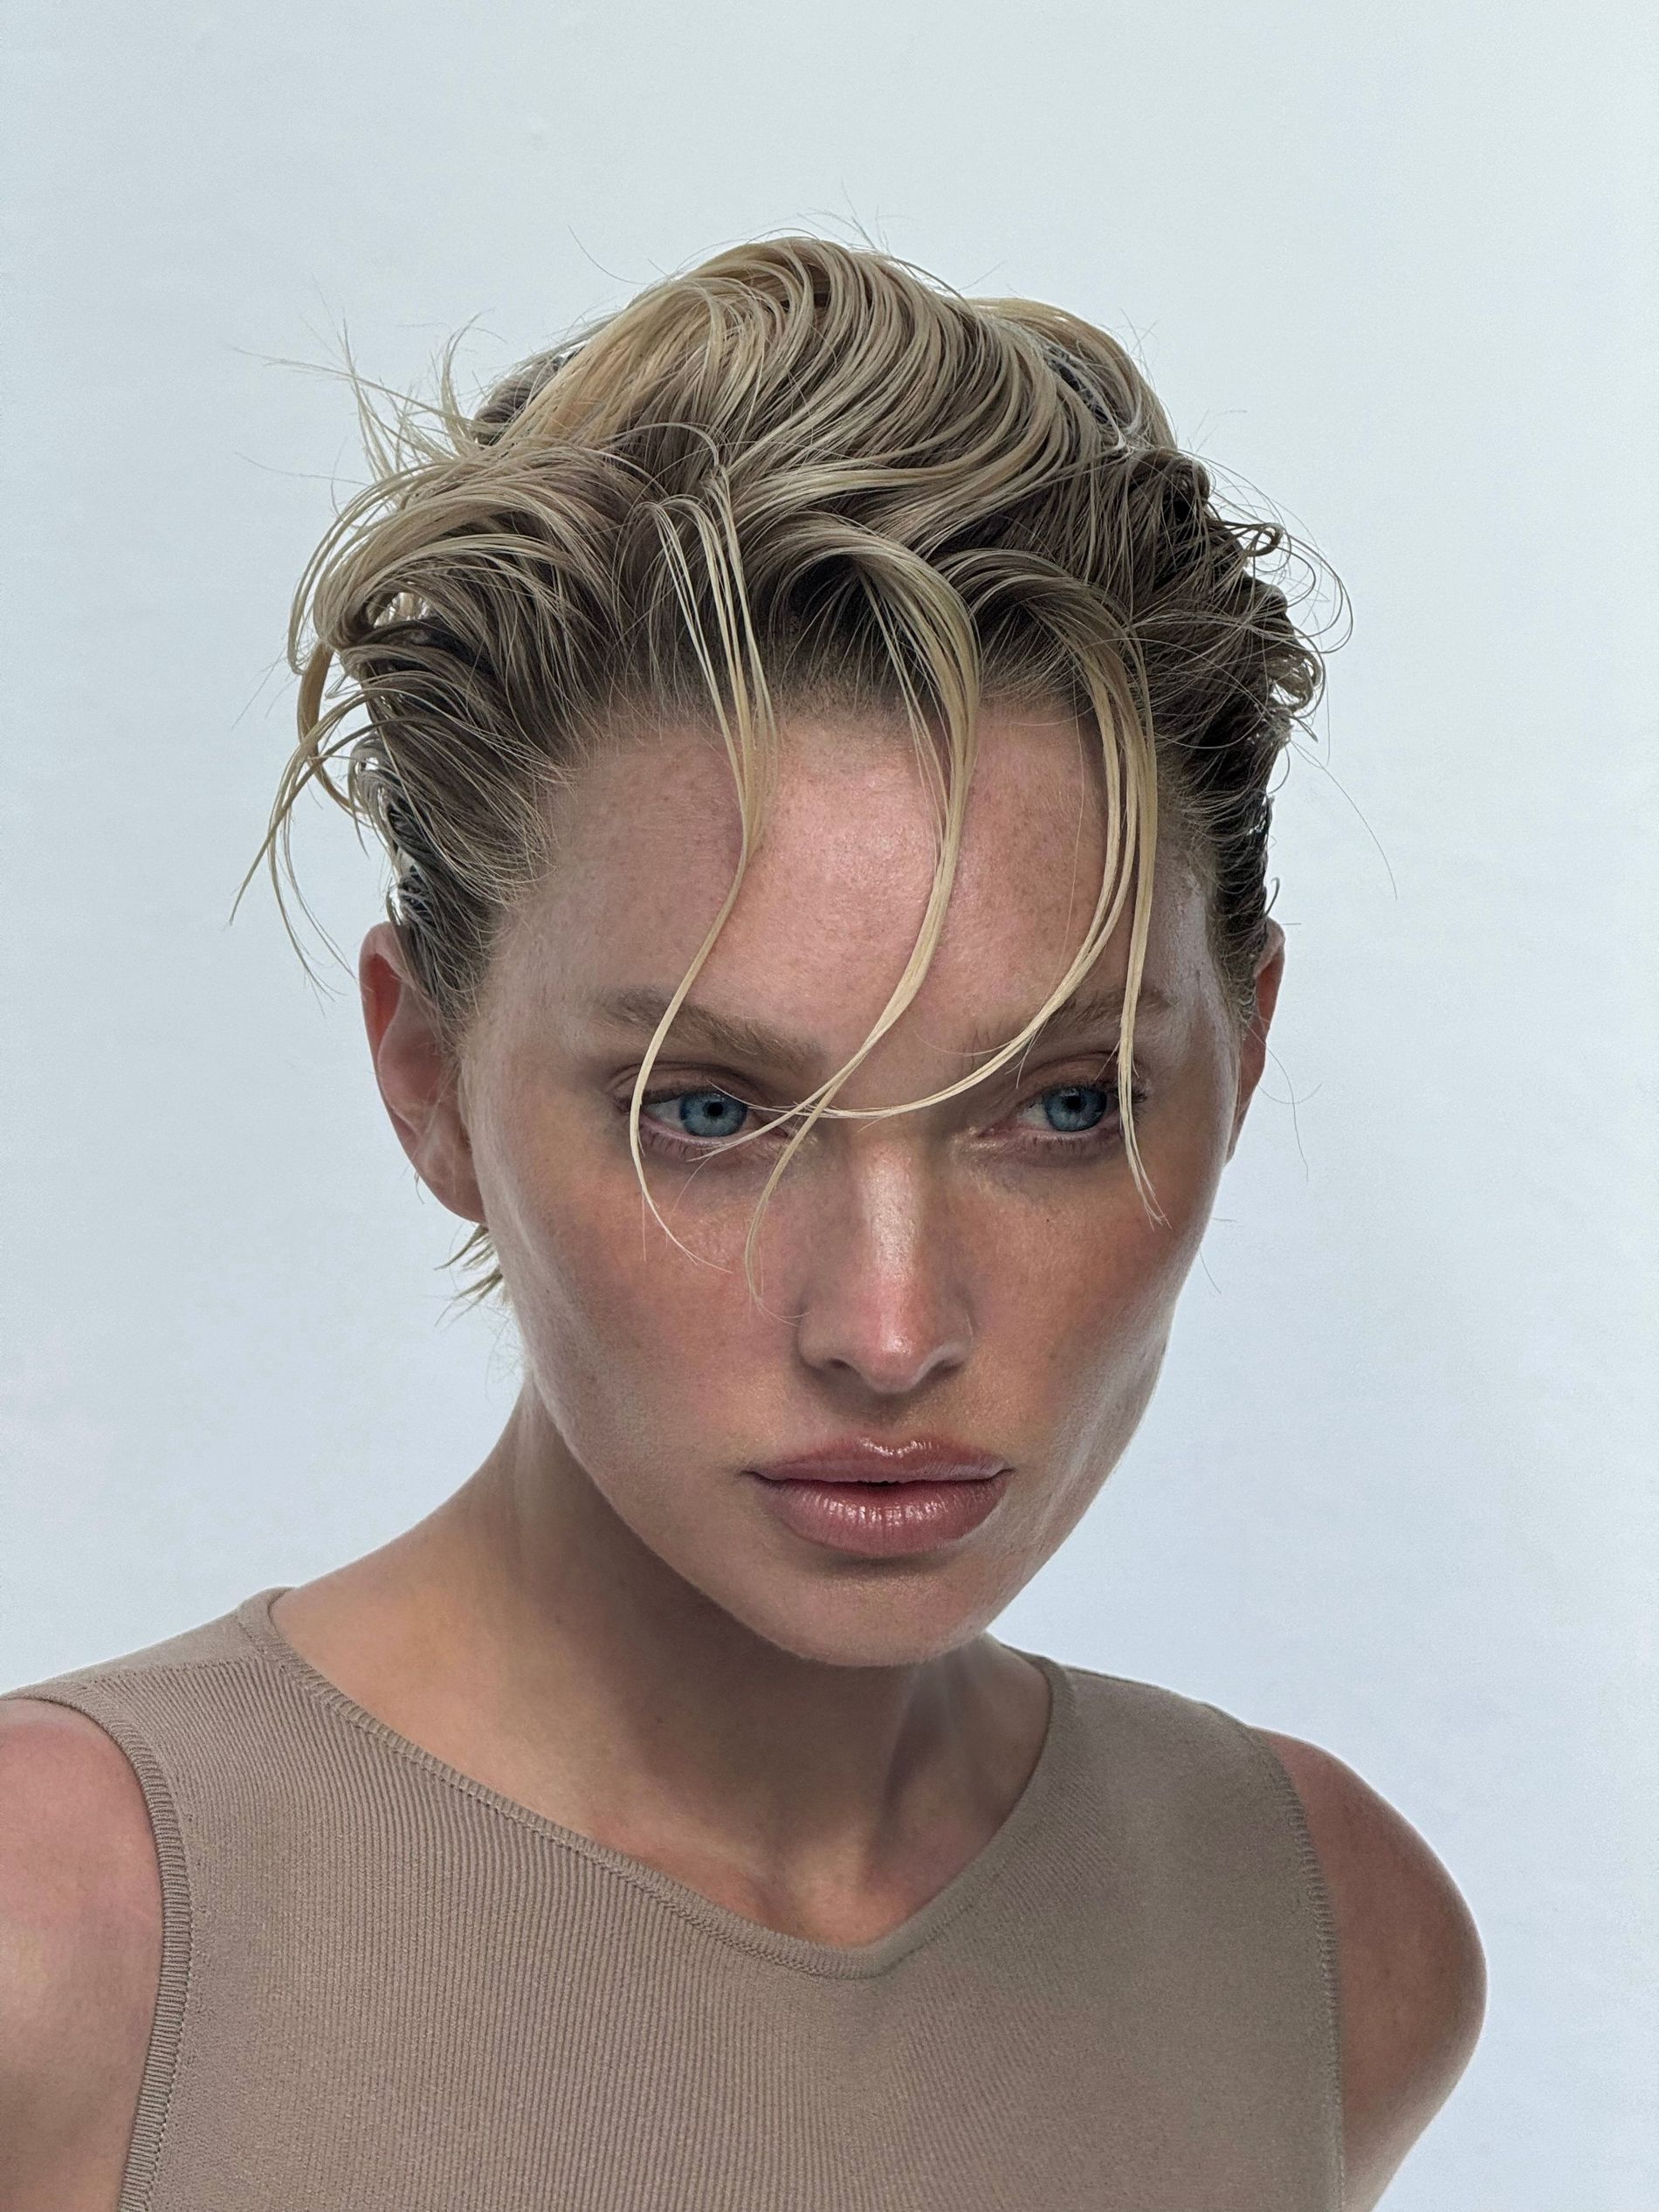 Elsa Hosk poses in her new, short 90s inspired hair cut